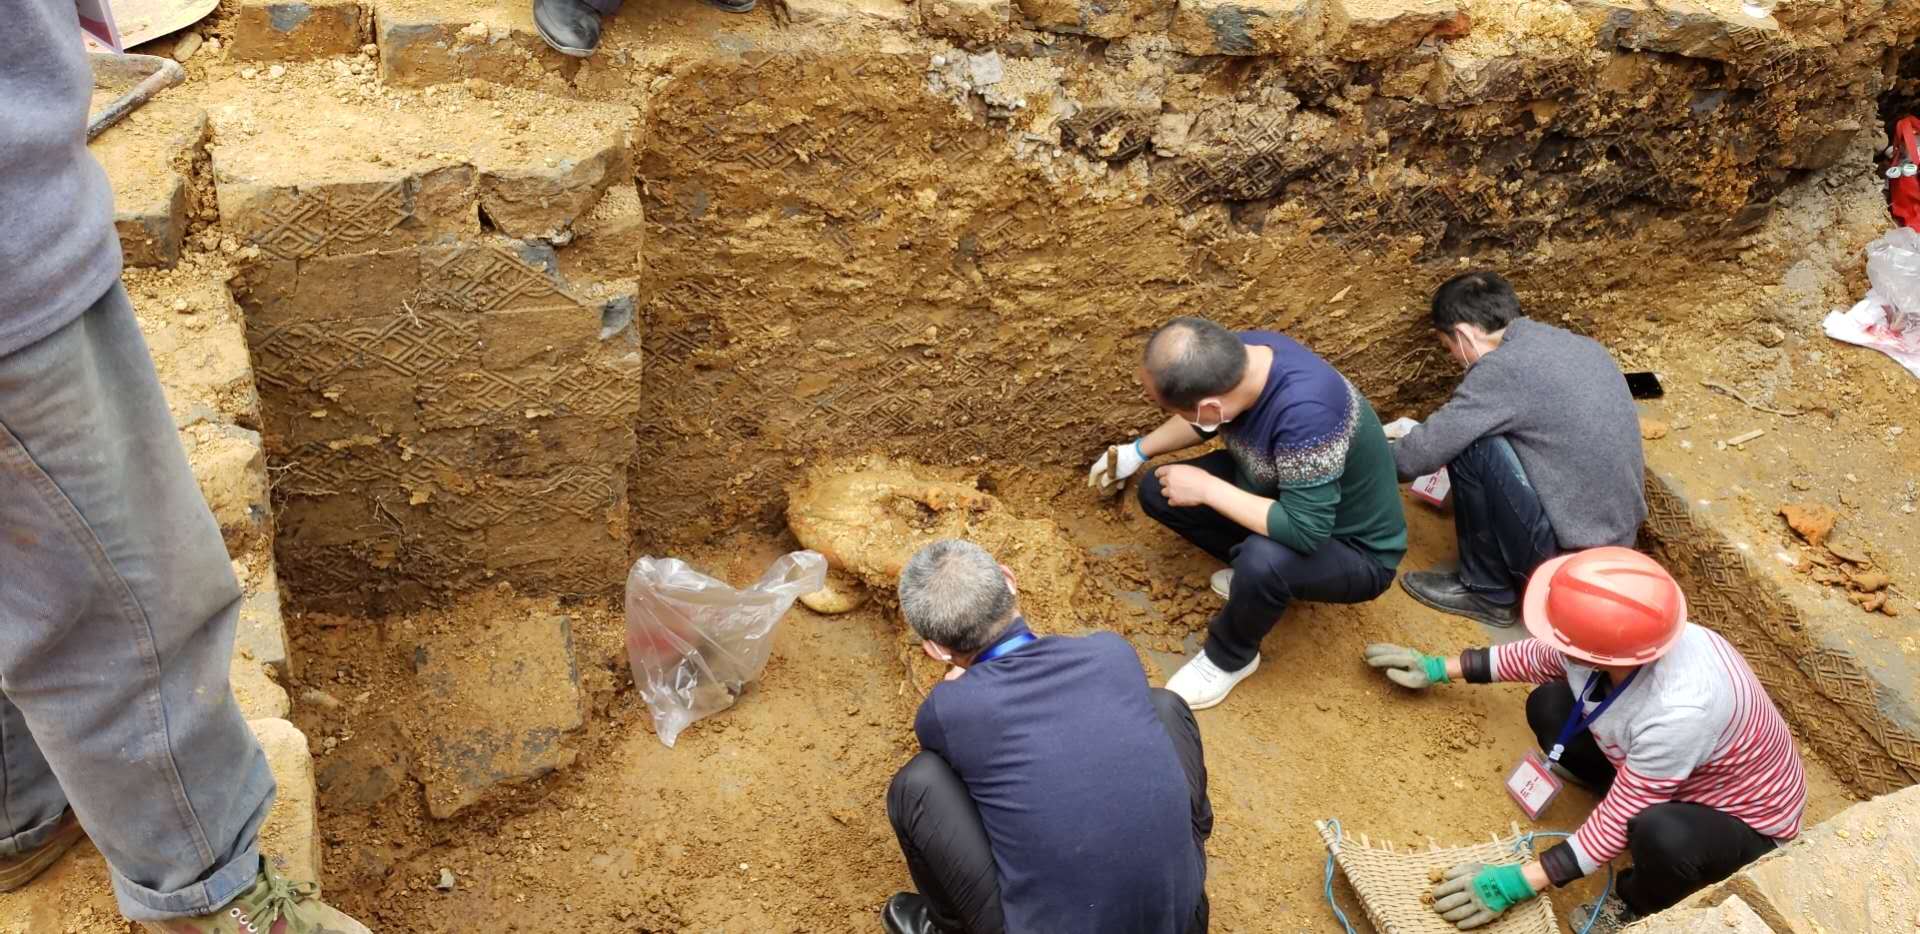 蓬安锦屏古墓里又挖出宝贝了:最新考古挖掘现场图片出来了,真是让人